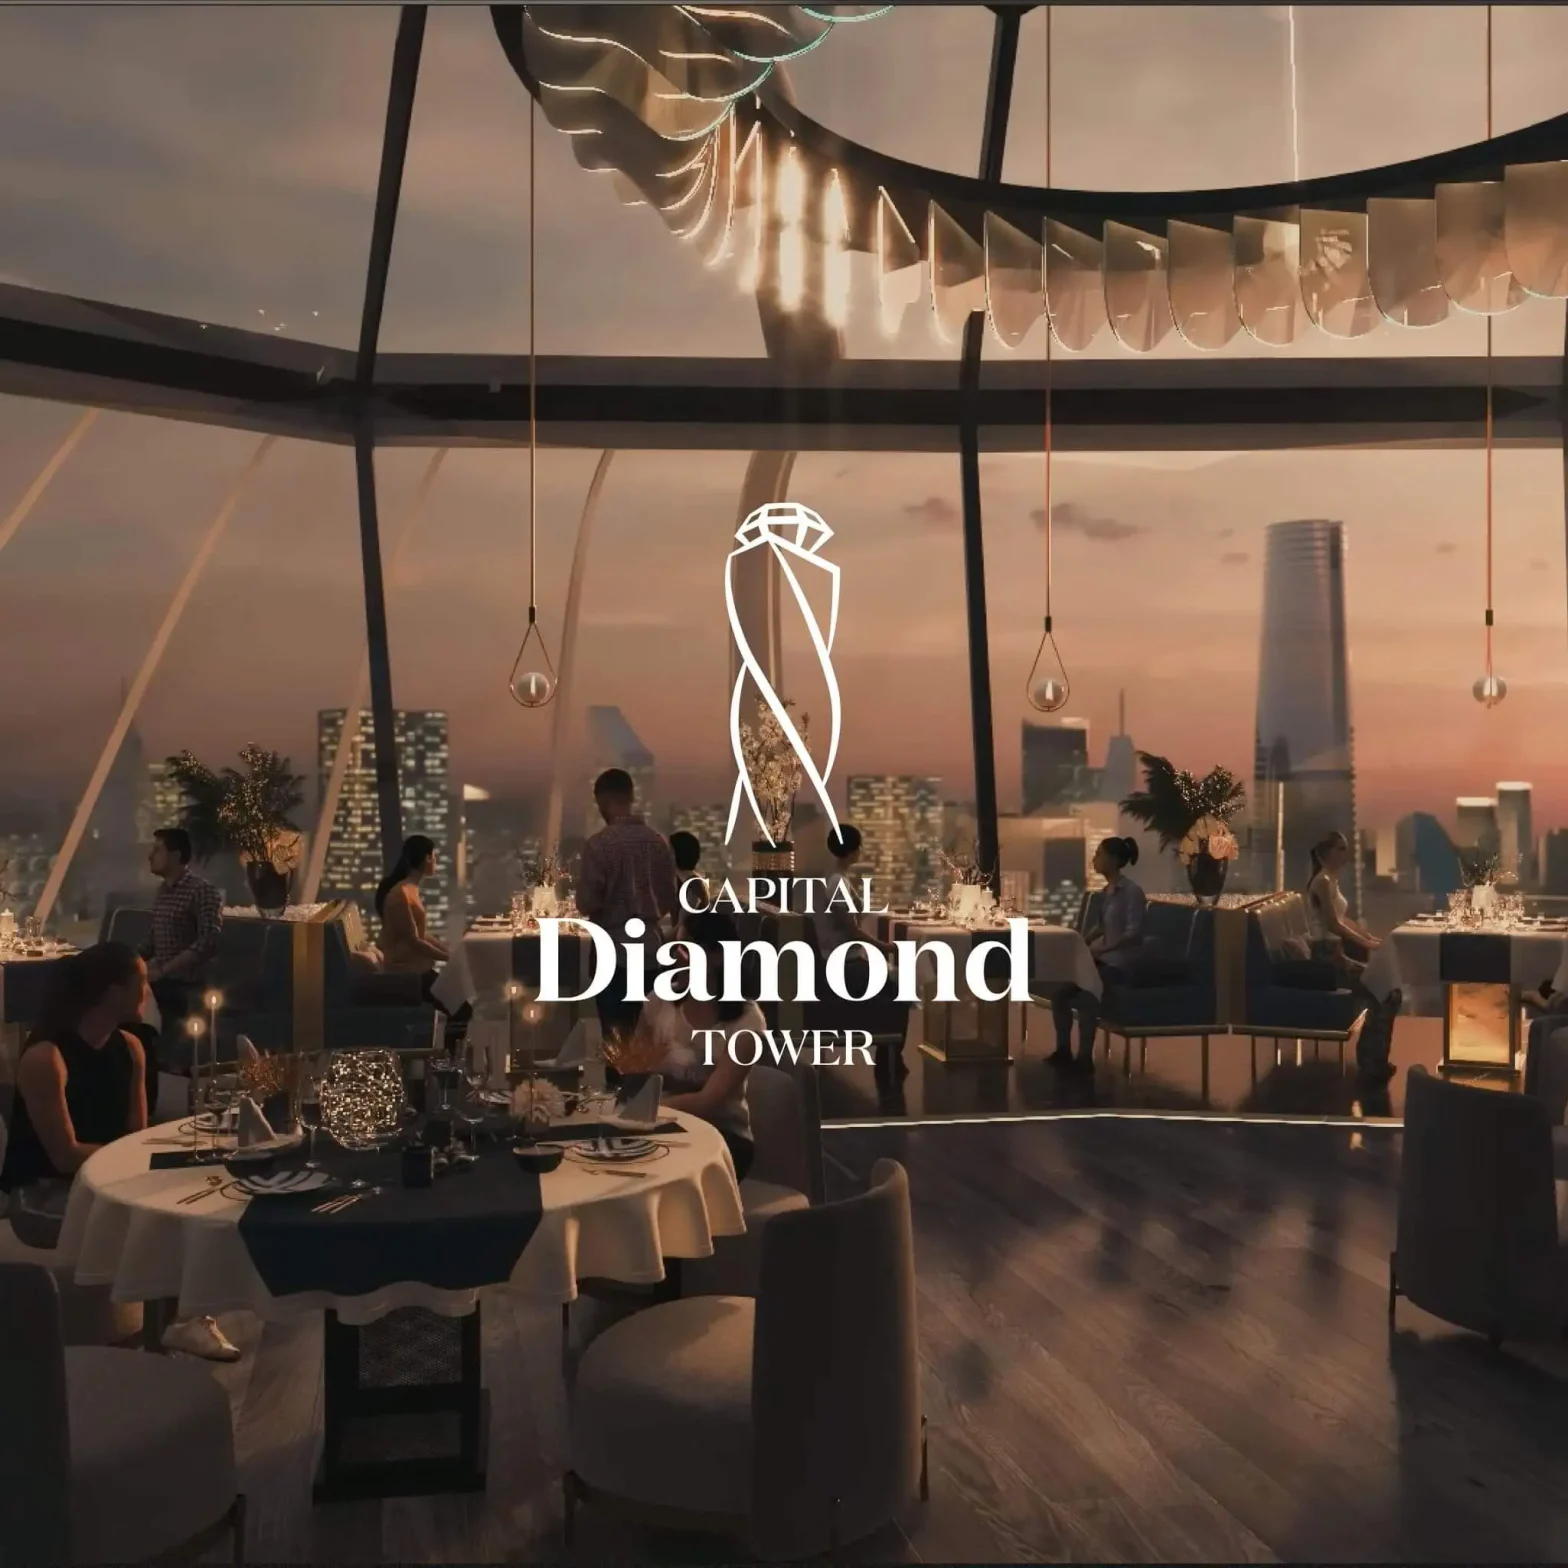 مول دايموند كابيتال تاور العاصمة الإدارية Diamond Capital Tower New Capital وأحدث مشروعات شركة أمازون العقارية